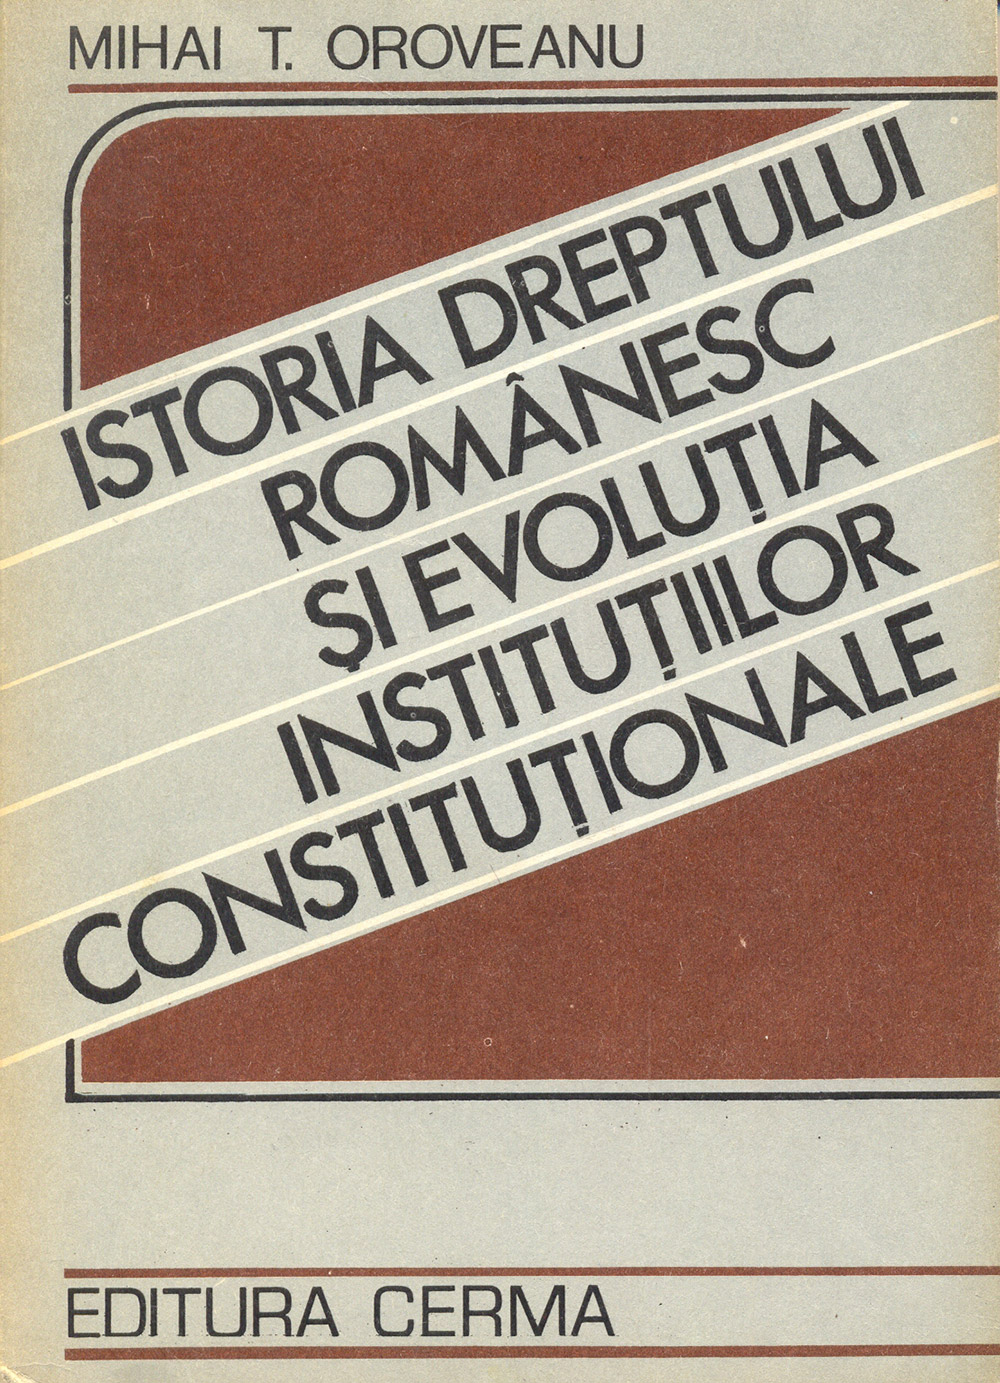 Coperta `Istoria dreptului românesc și evoluția instituțiilor constituționale` - Mihai. T. Oroveanu